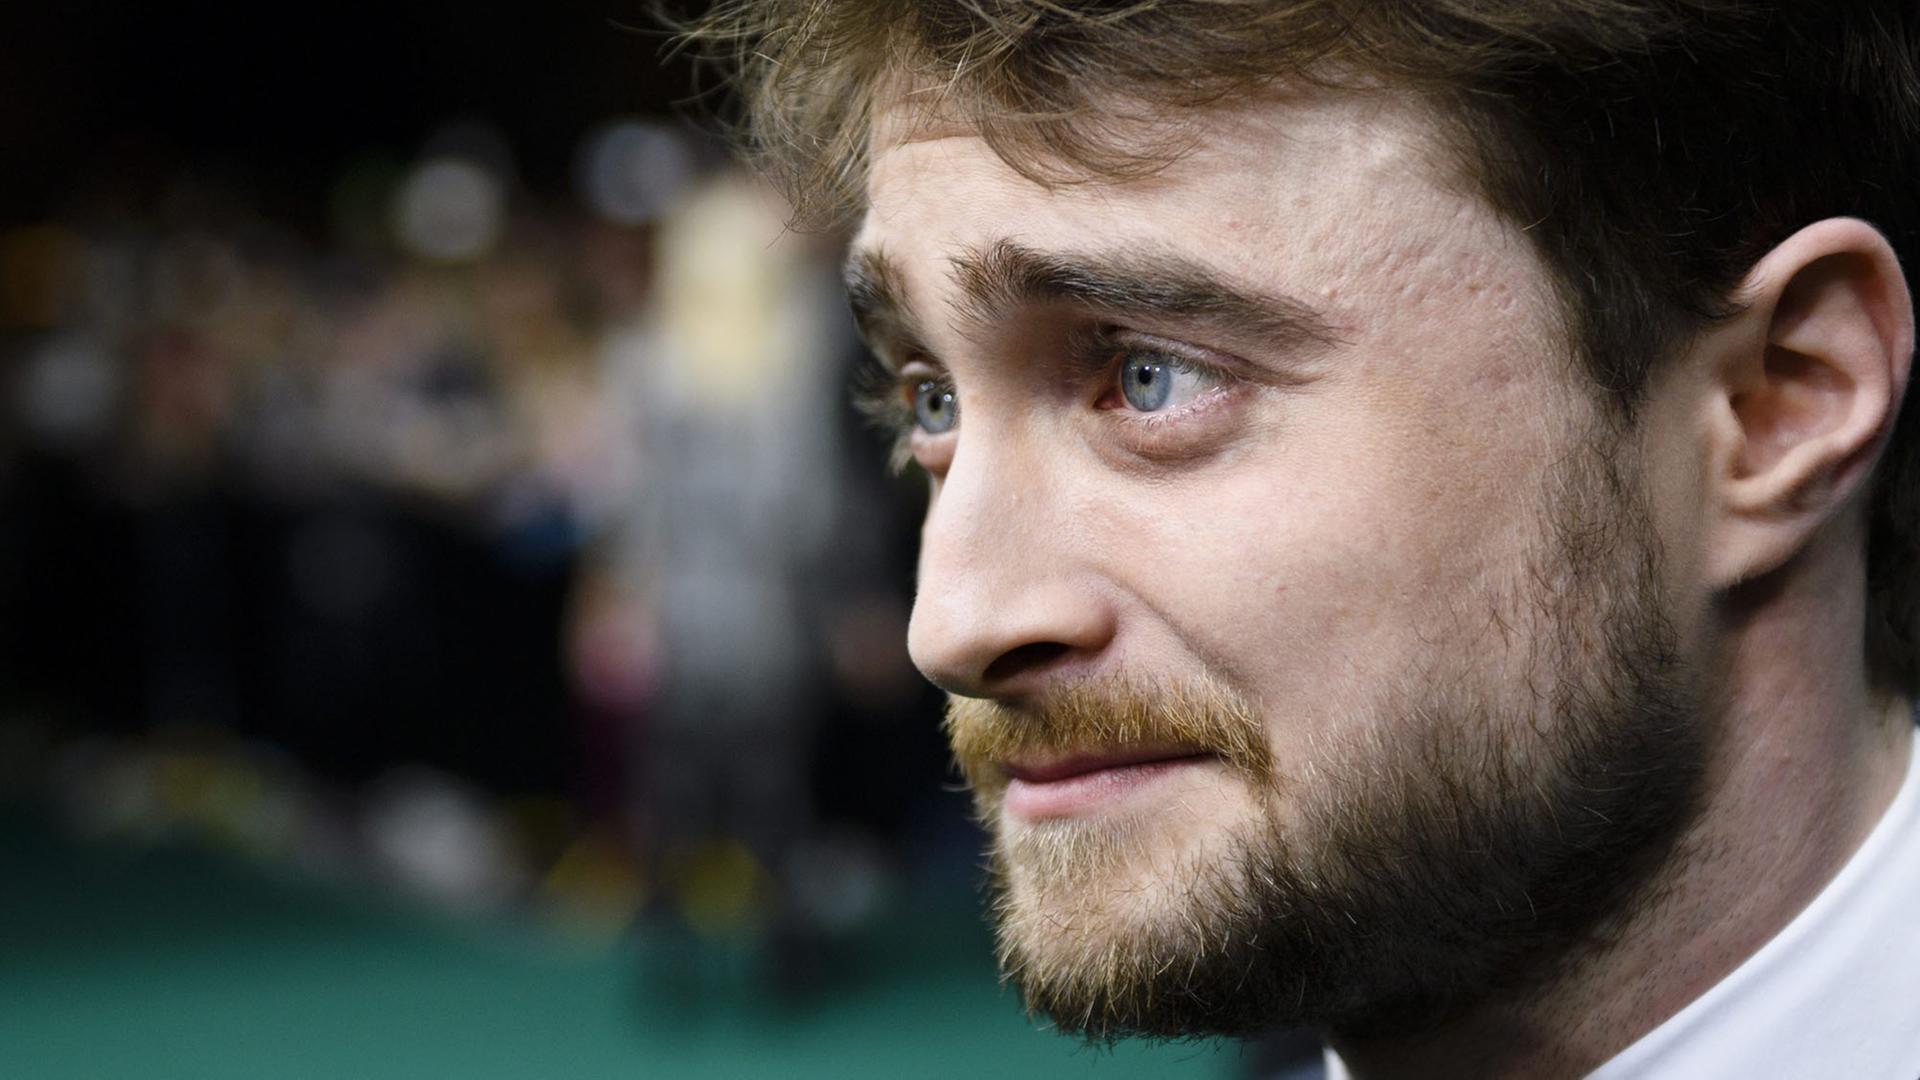 Der britische Schauspieler Daniel Radcliffe bei der Präsentation des Films "Imperium" auf dem Züricher Filmfestival 12th Zurich Film Festival 2016